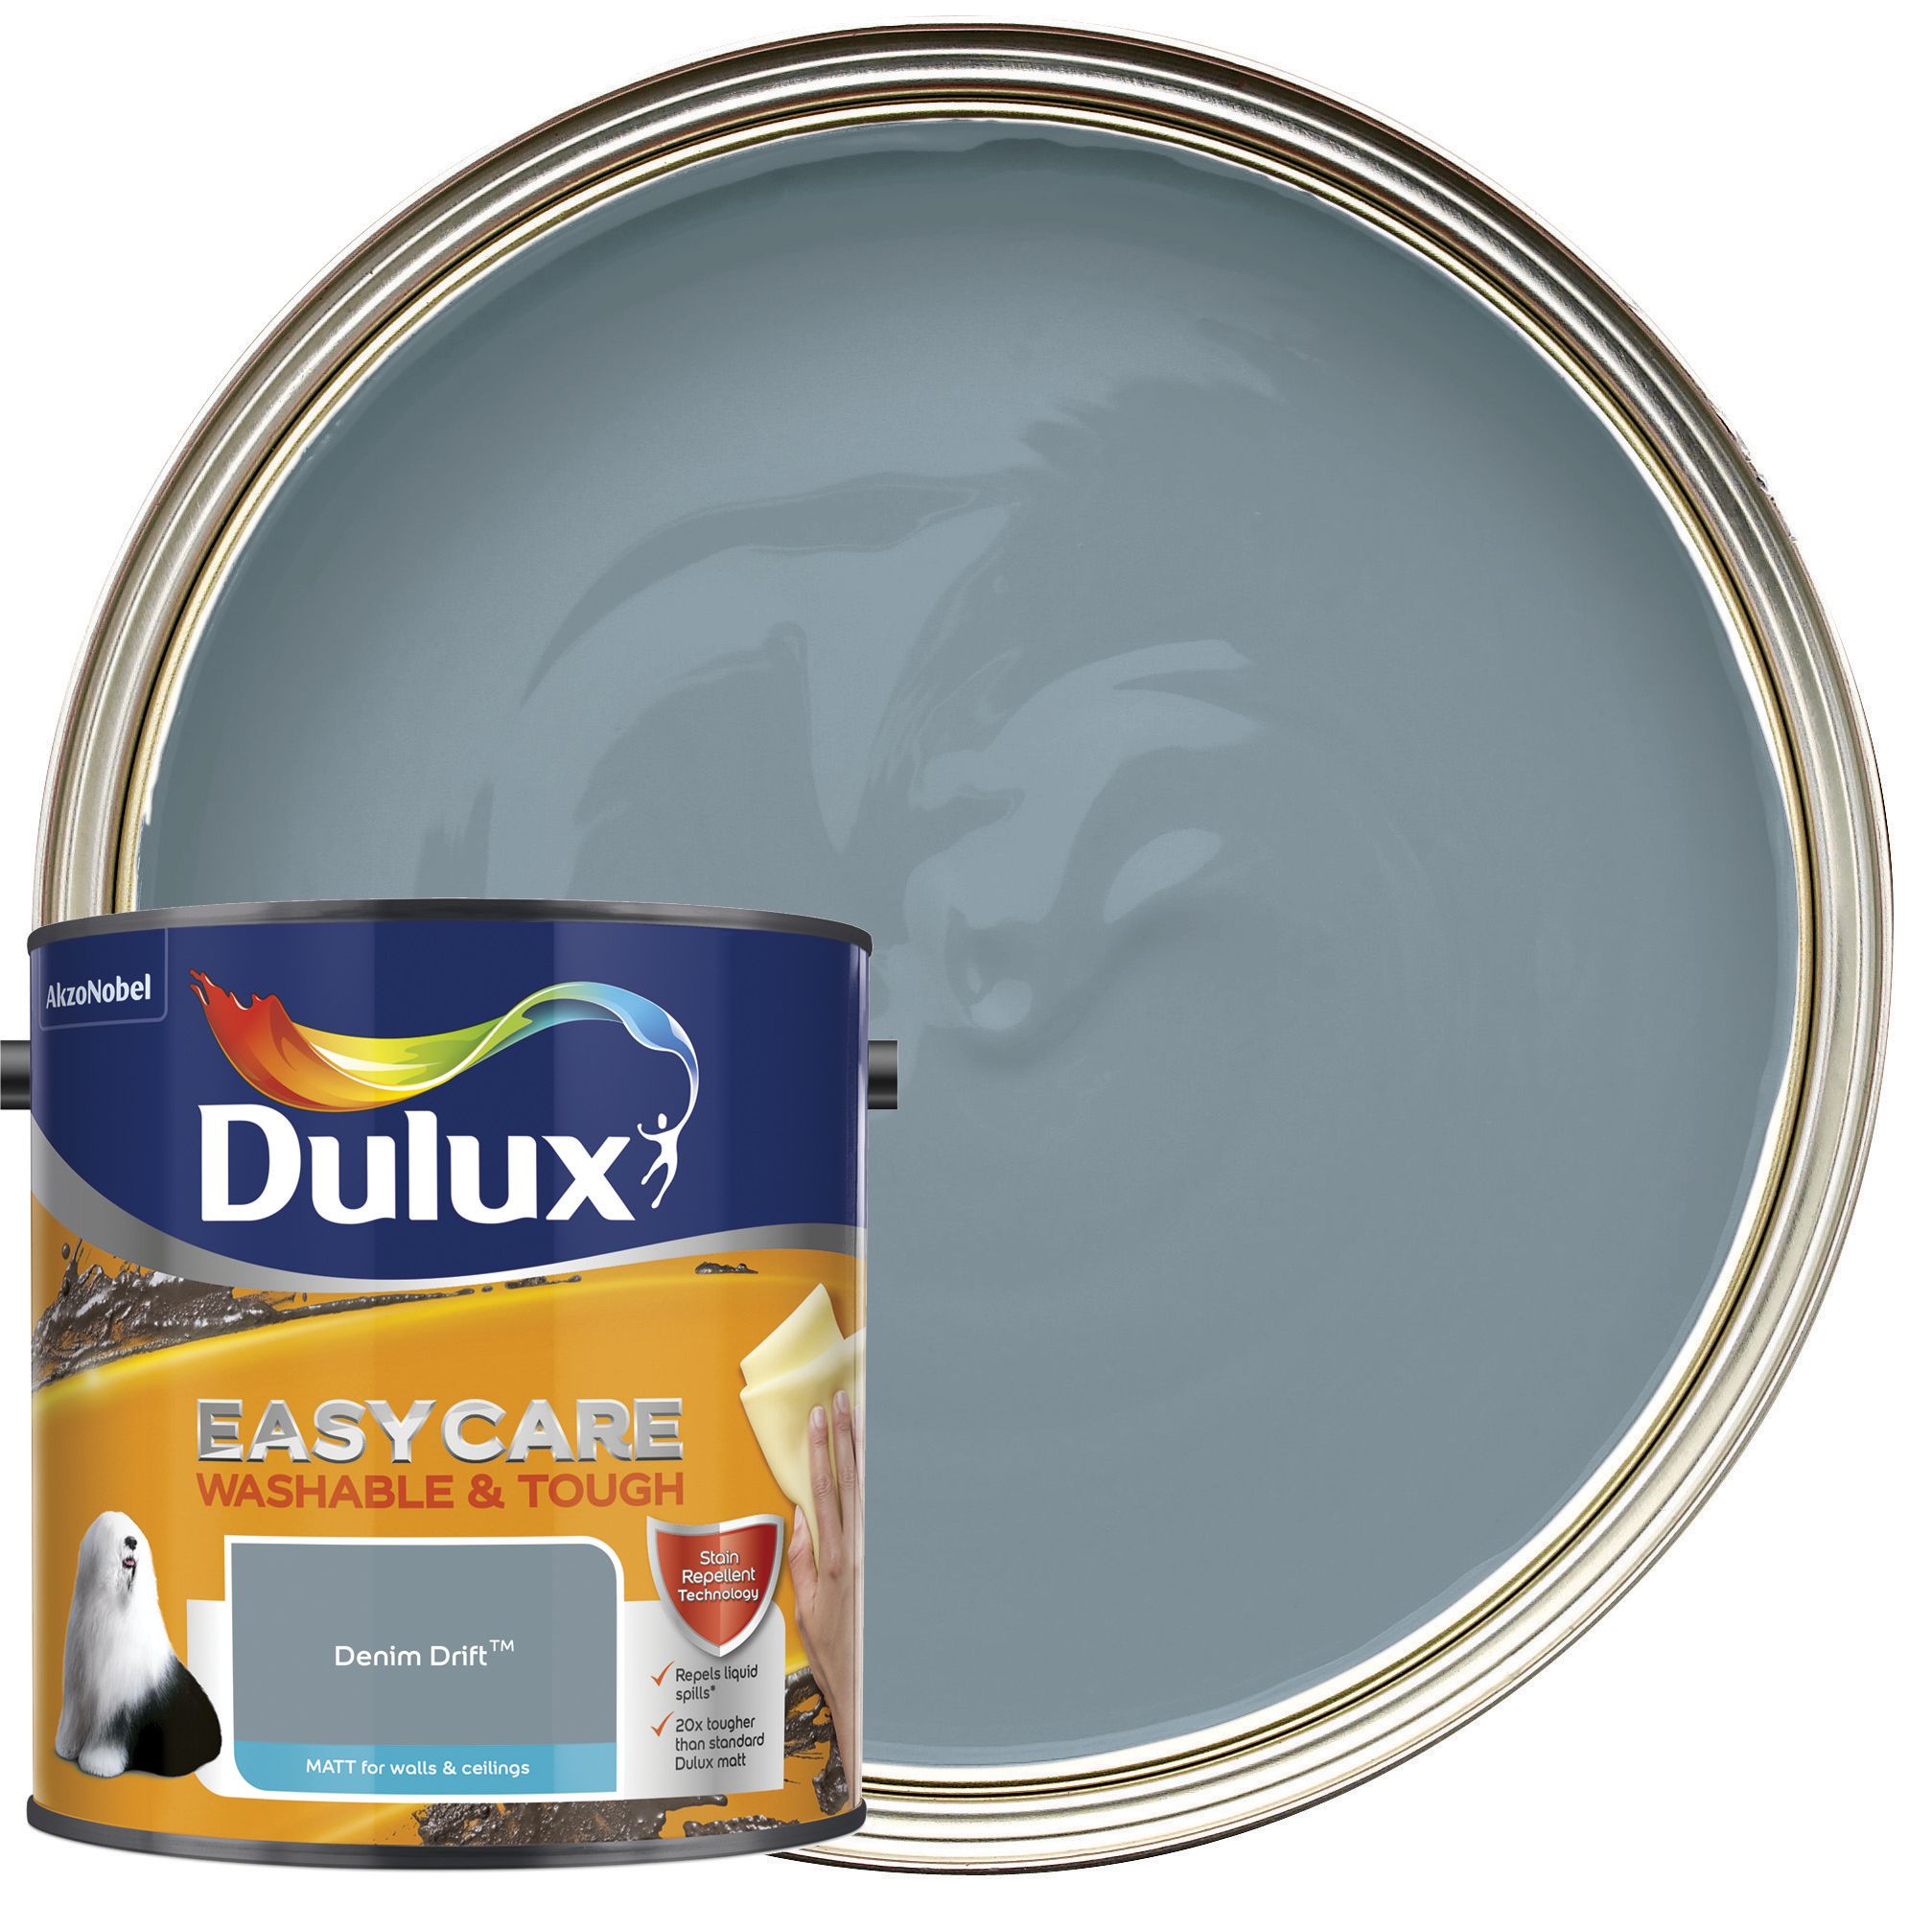 Dulux Easycare Washable & Tough Matt Emulsion Paint - Denim Drift - 2.5L